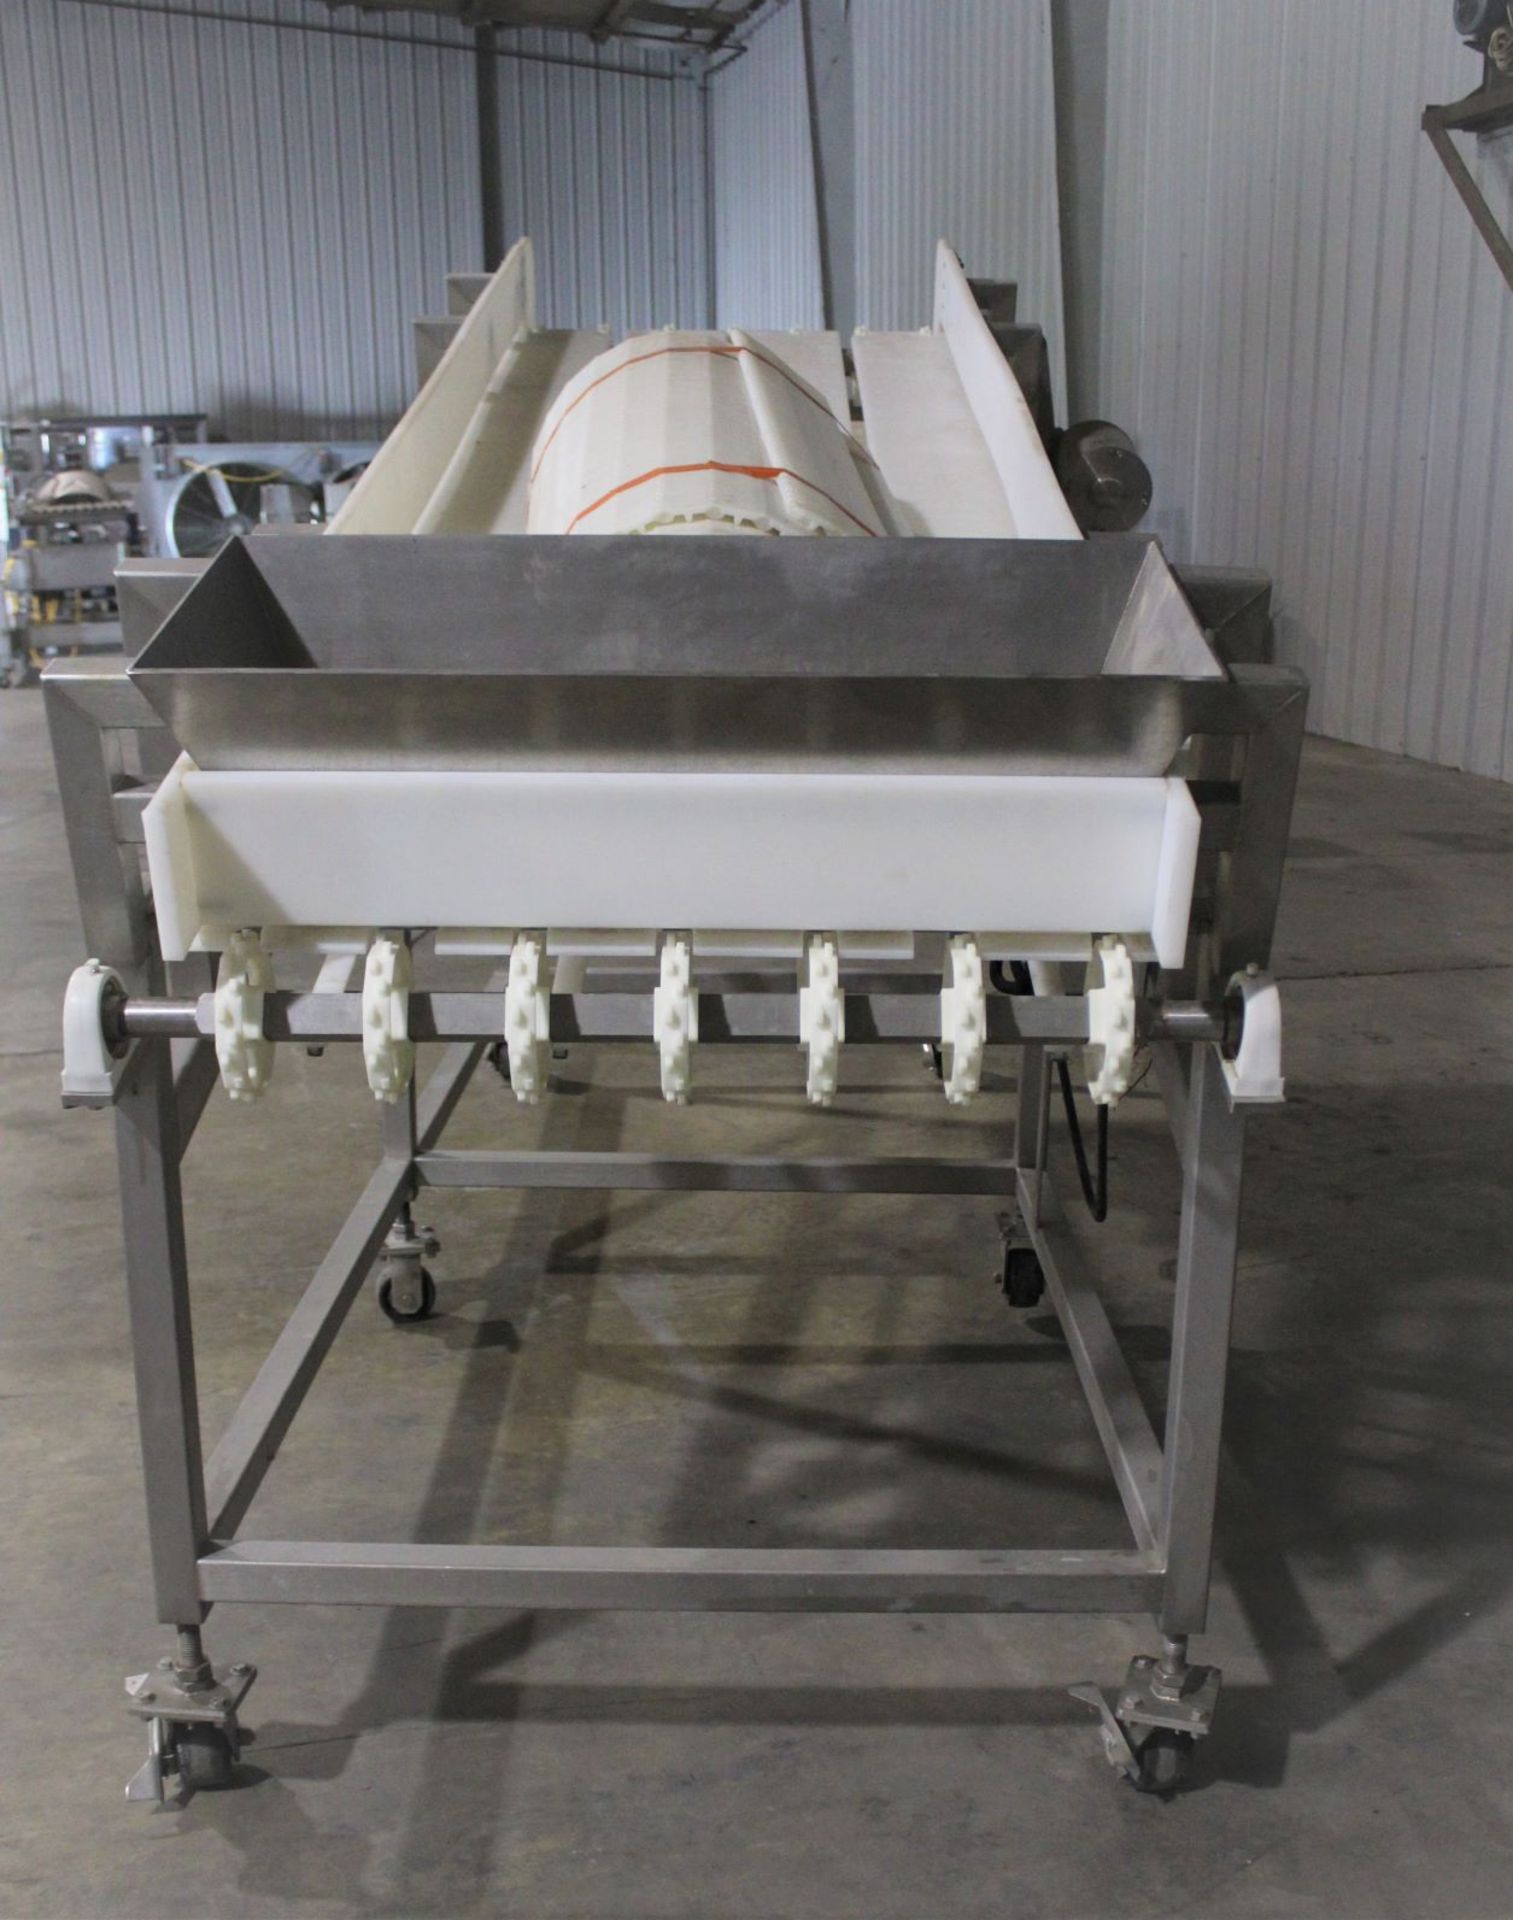 Frozen Block Conveyor, 34" wide x 140" long - Stamped 14052032 - Image 5 of 6